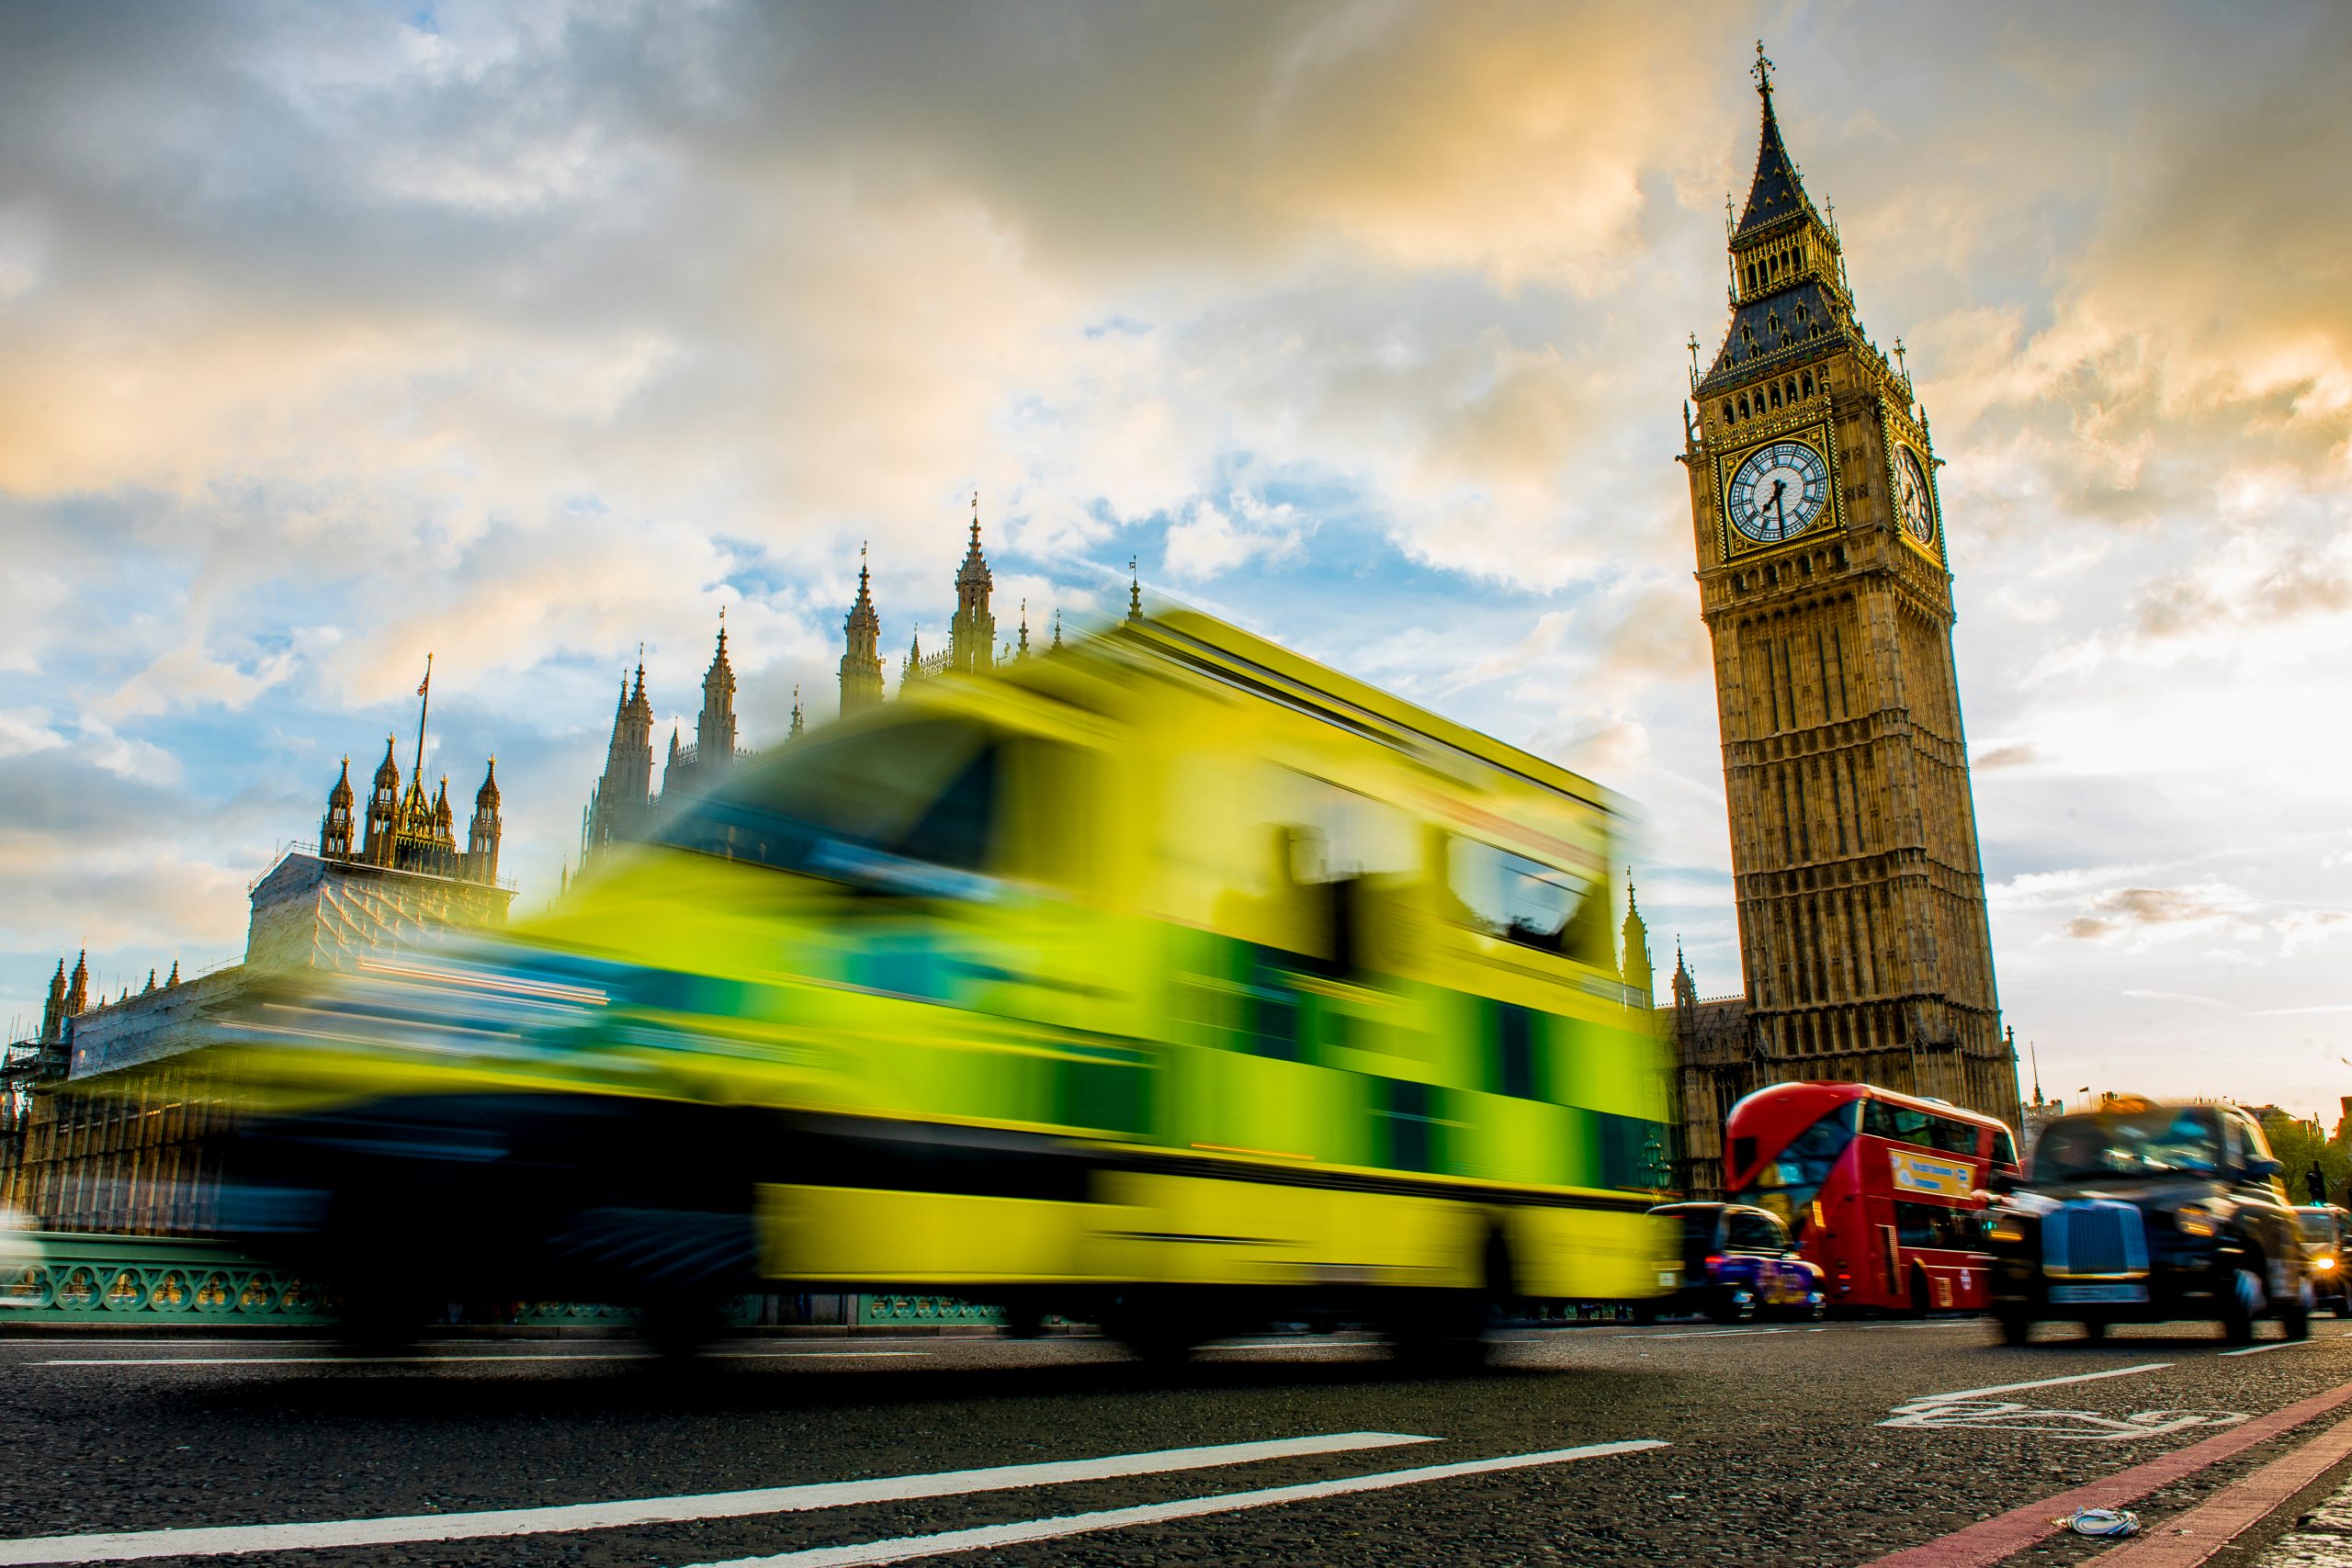 Physician associate regulation continues progress through Parliament